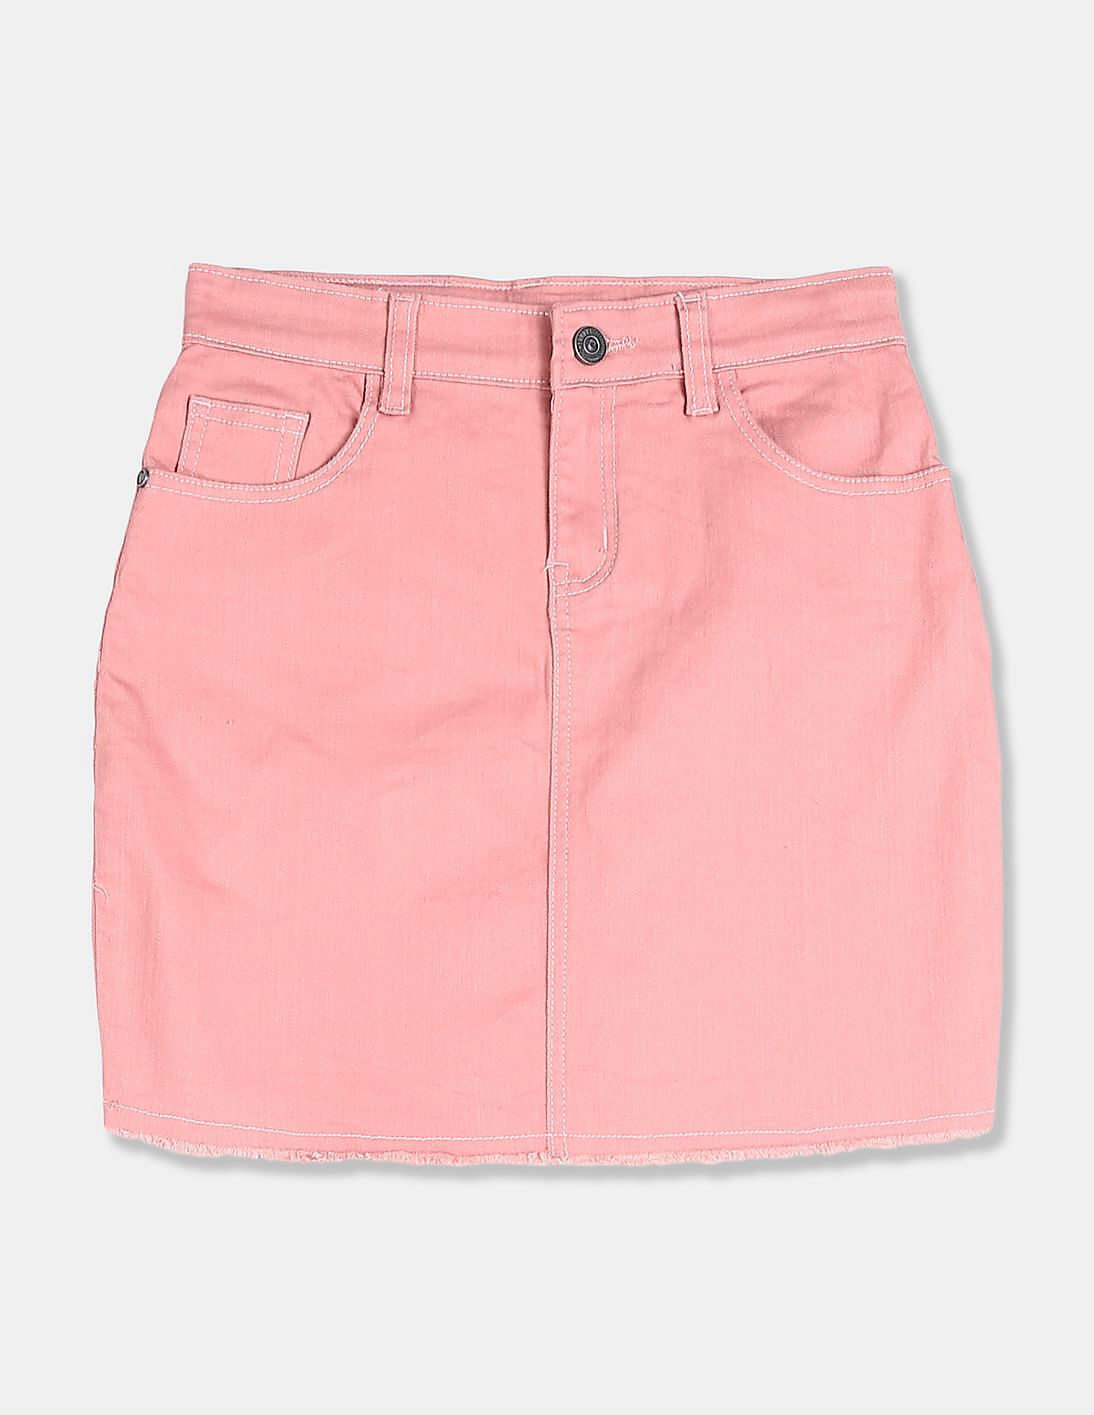 light pink jean skirt